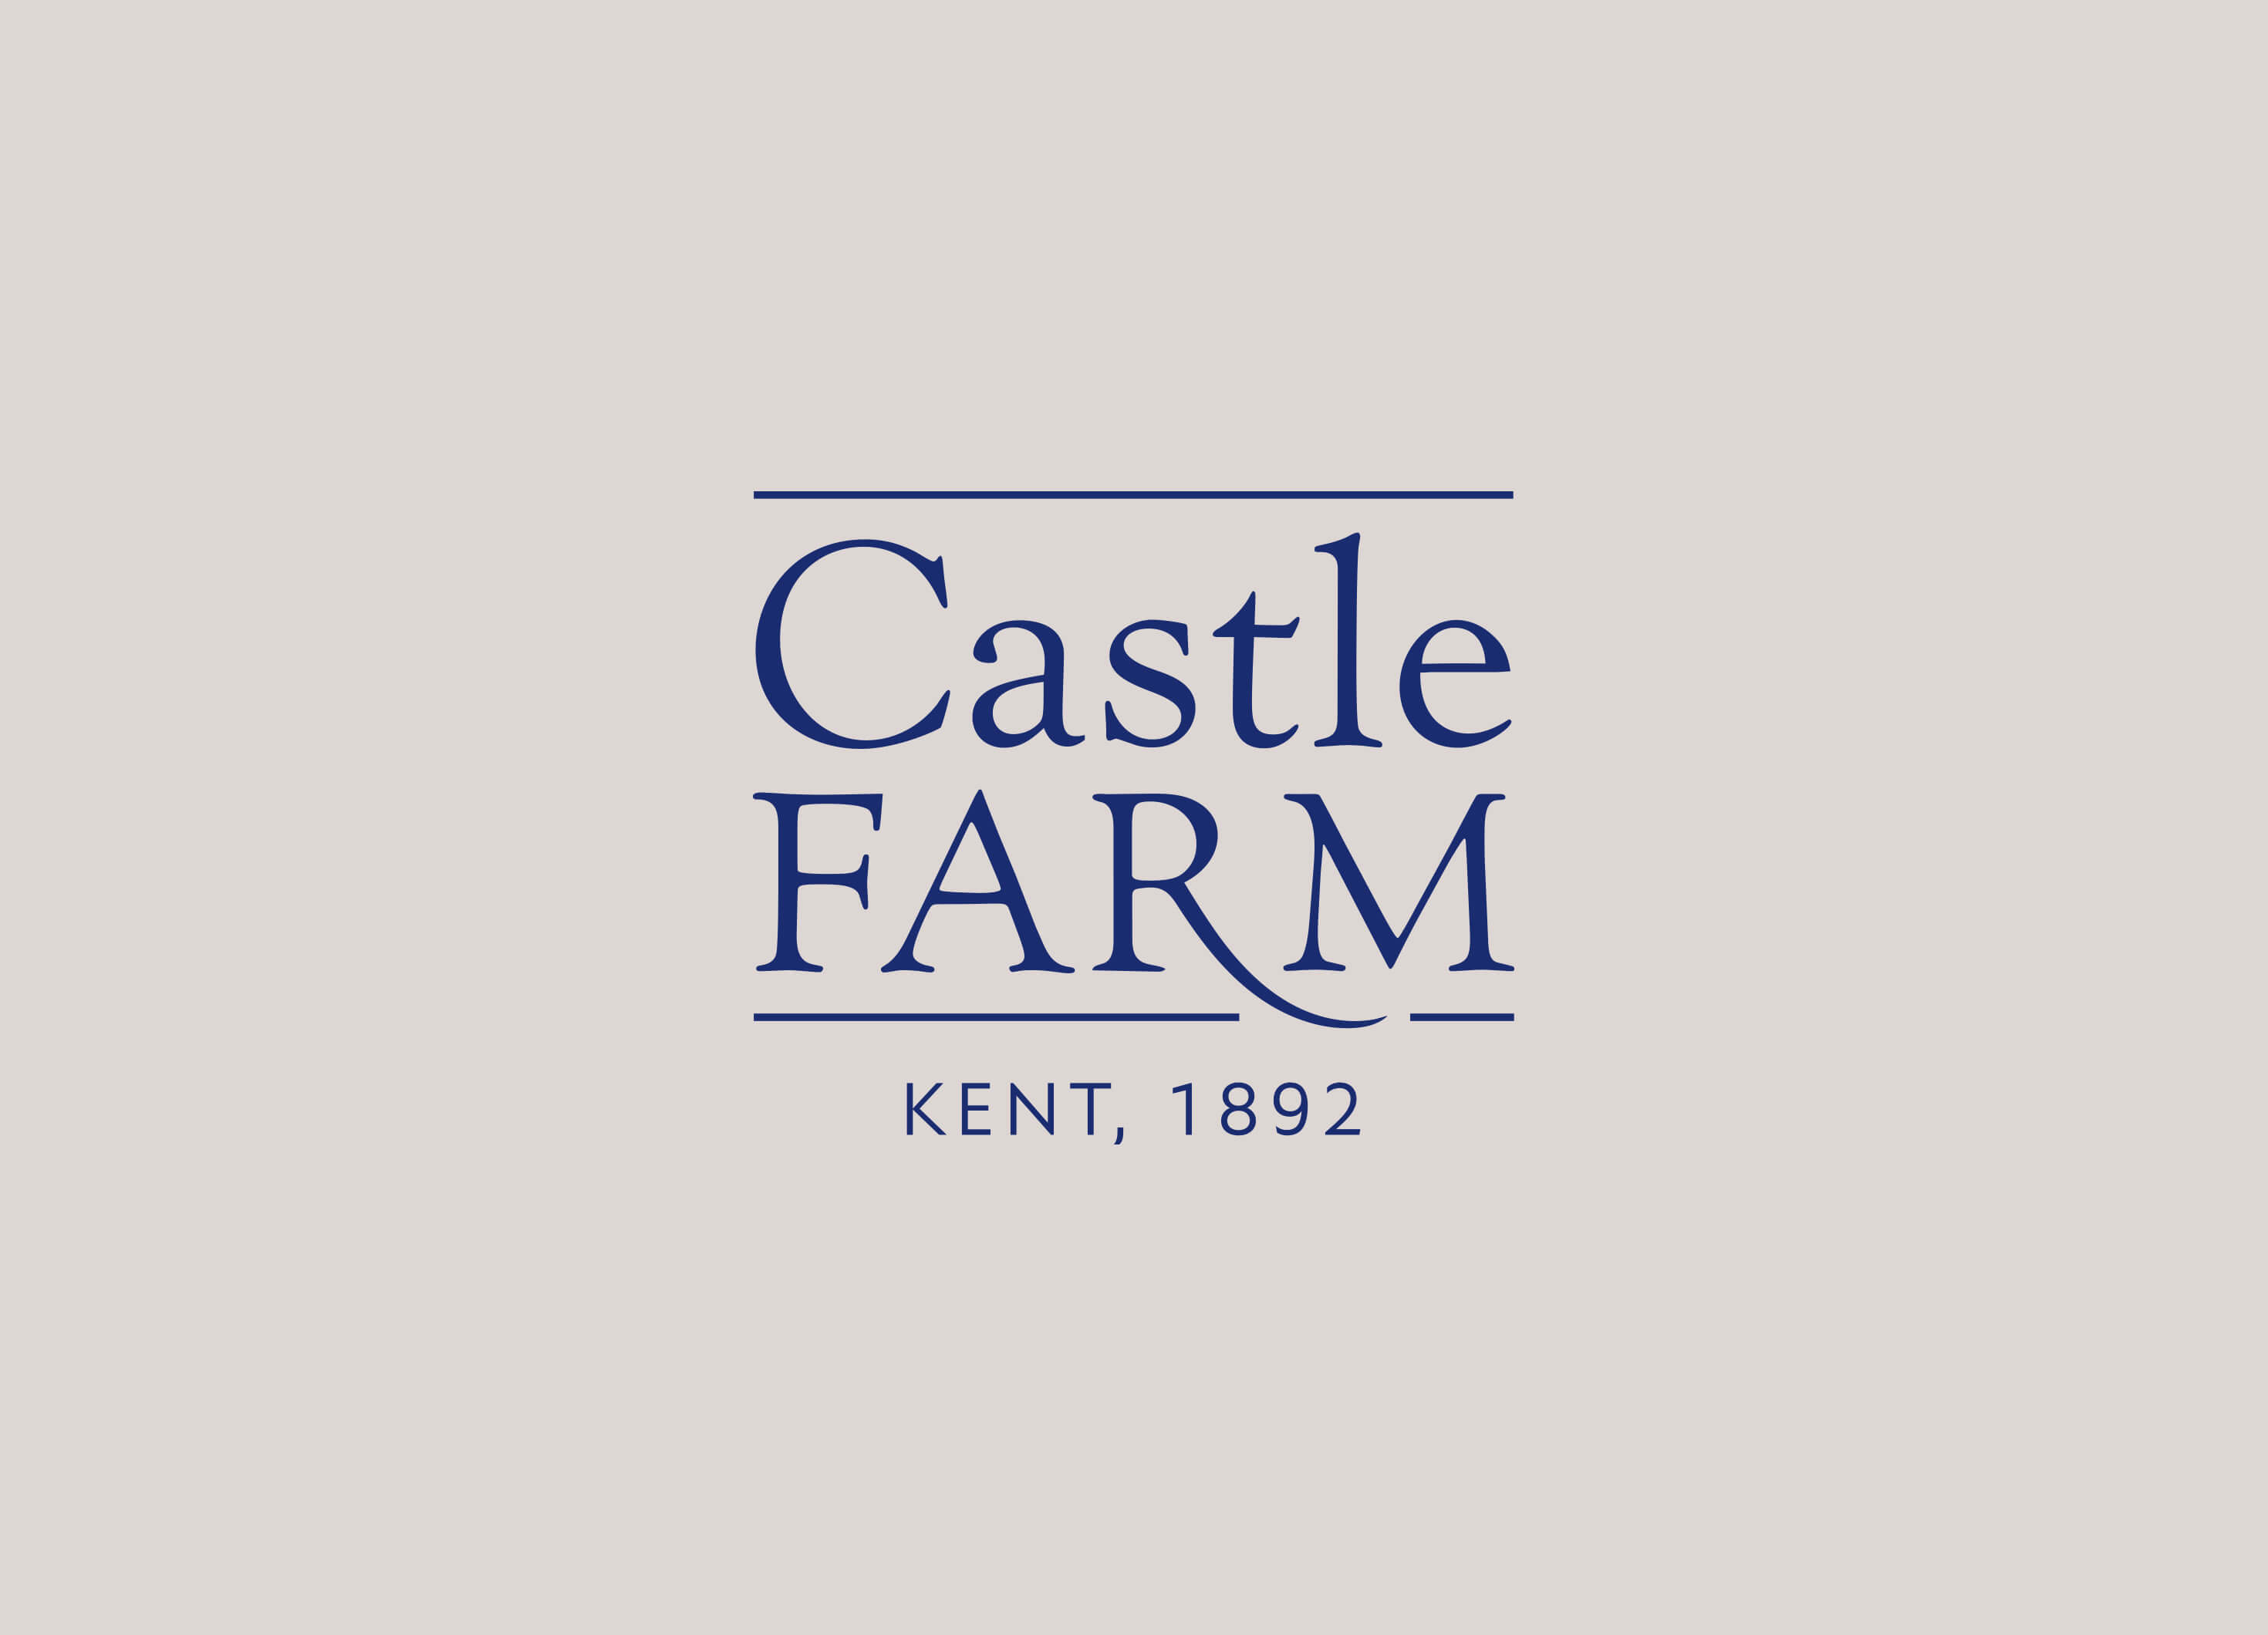 Castle Farm simplified brand heritage logo design